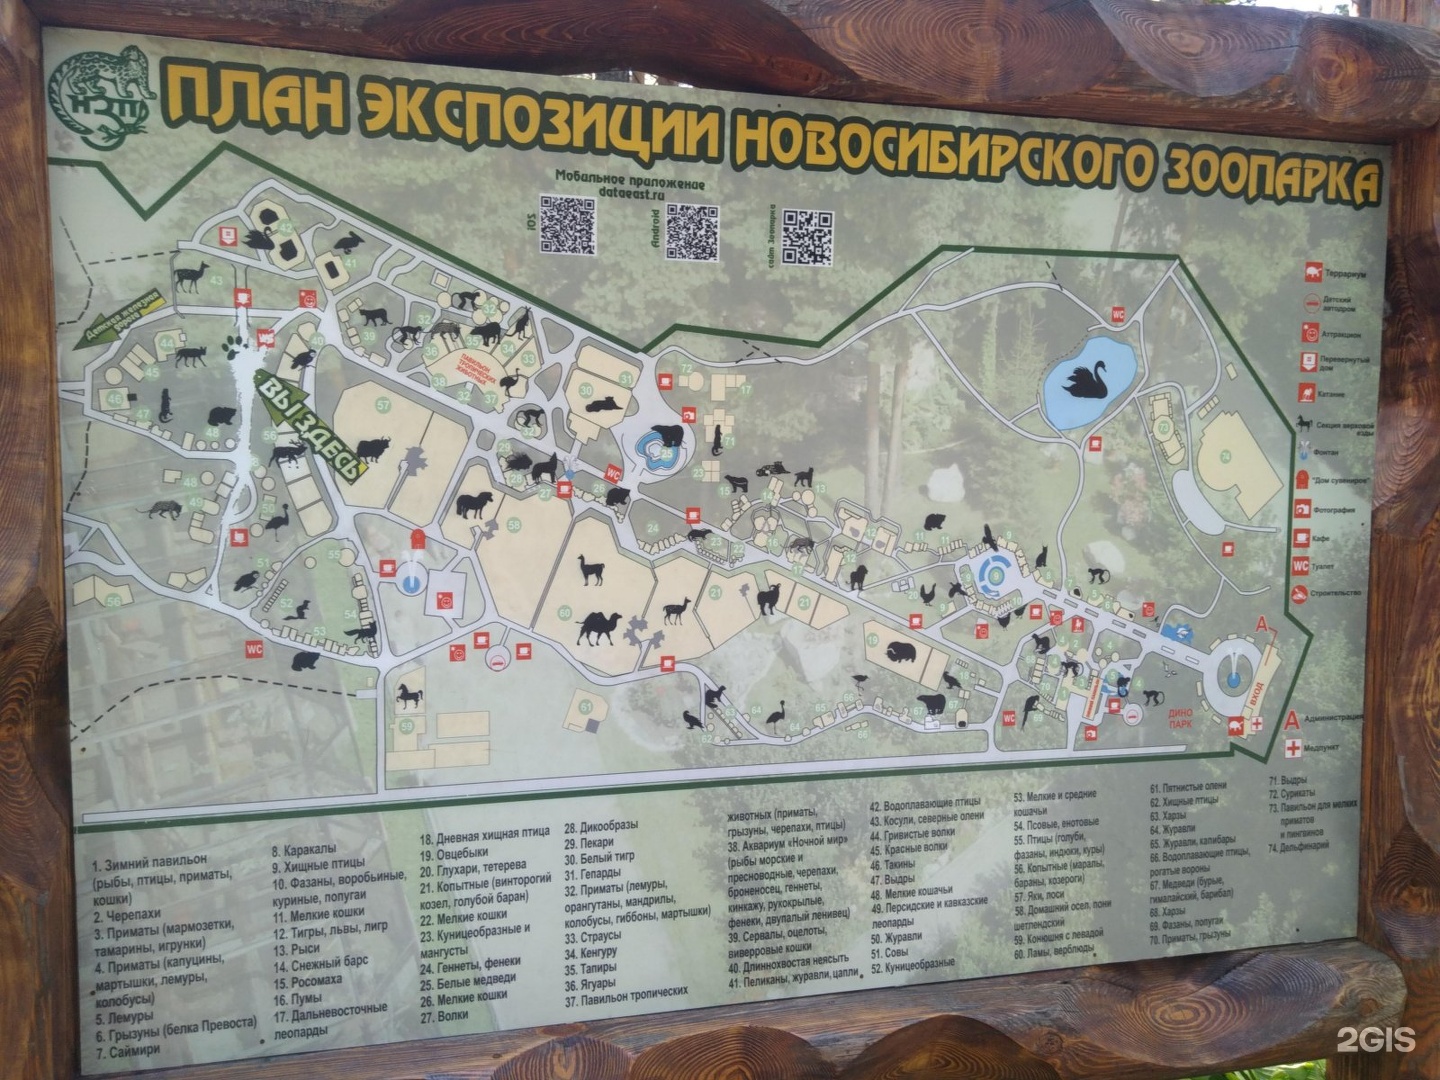 Карта новосибирского зоопарка